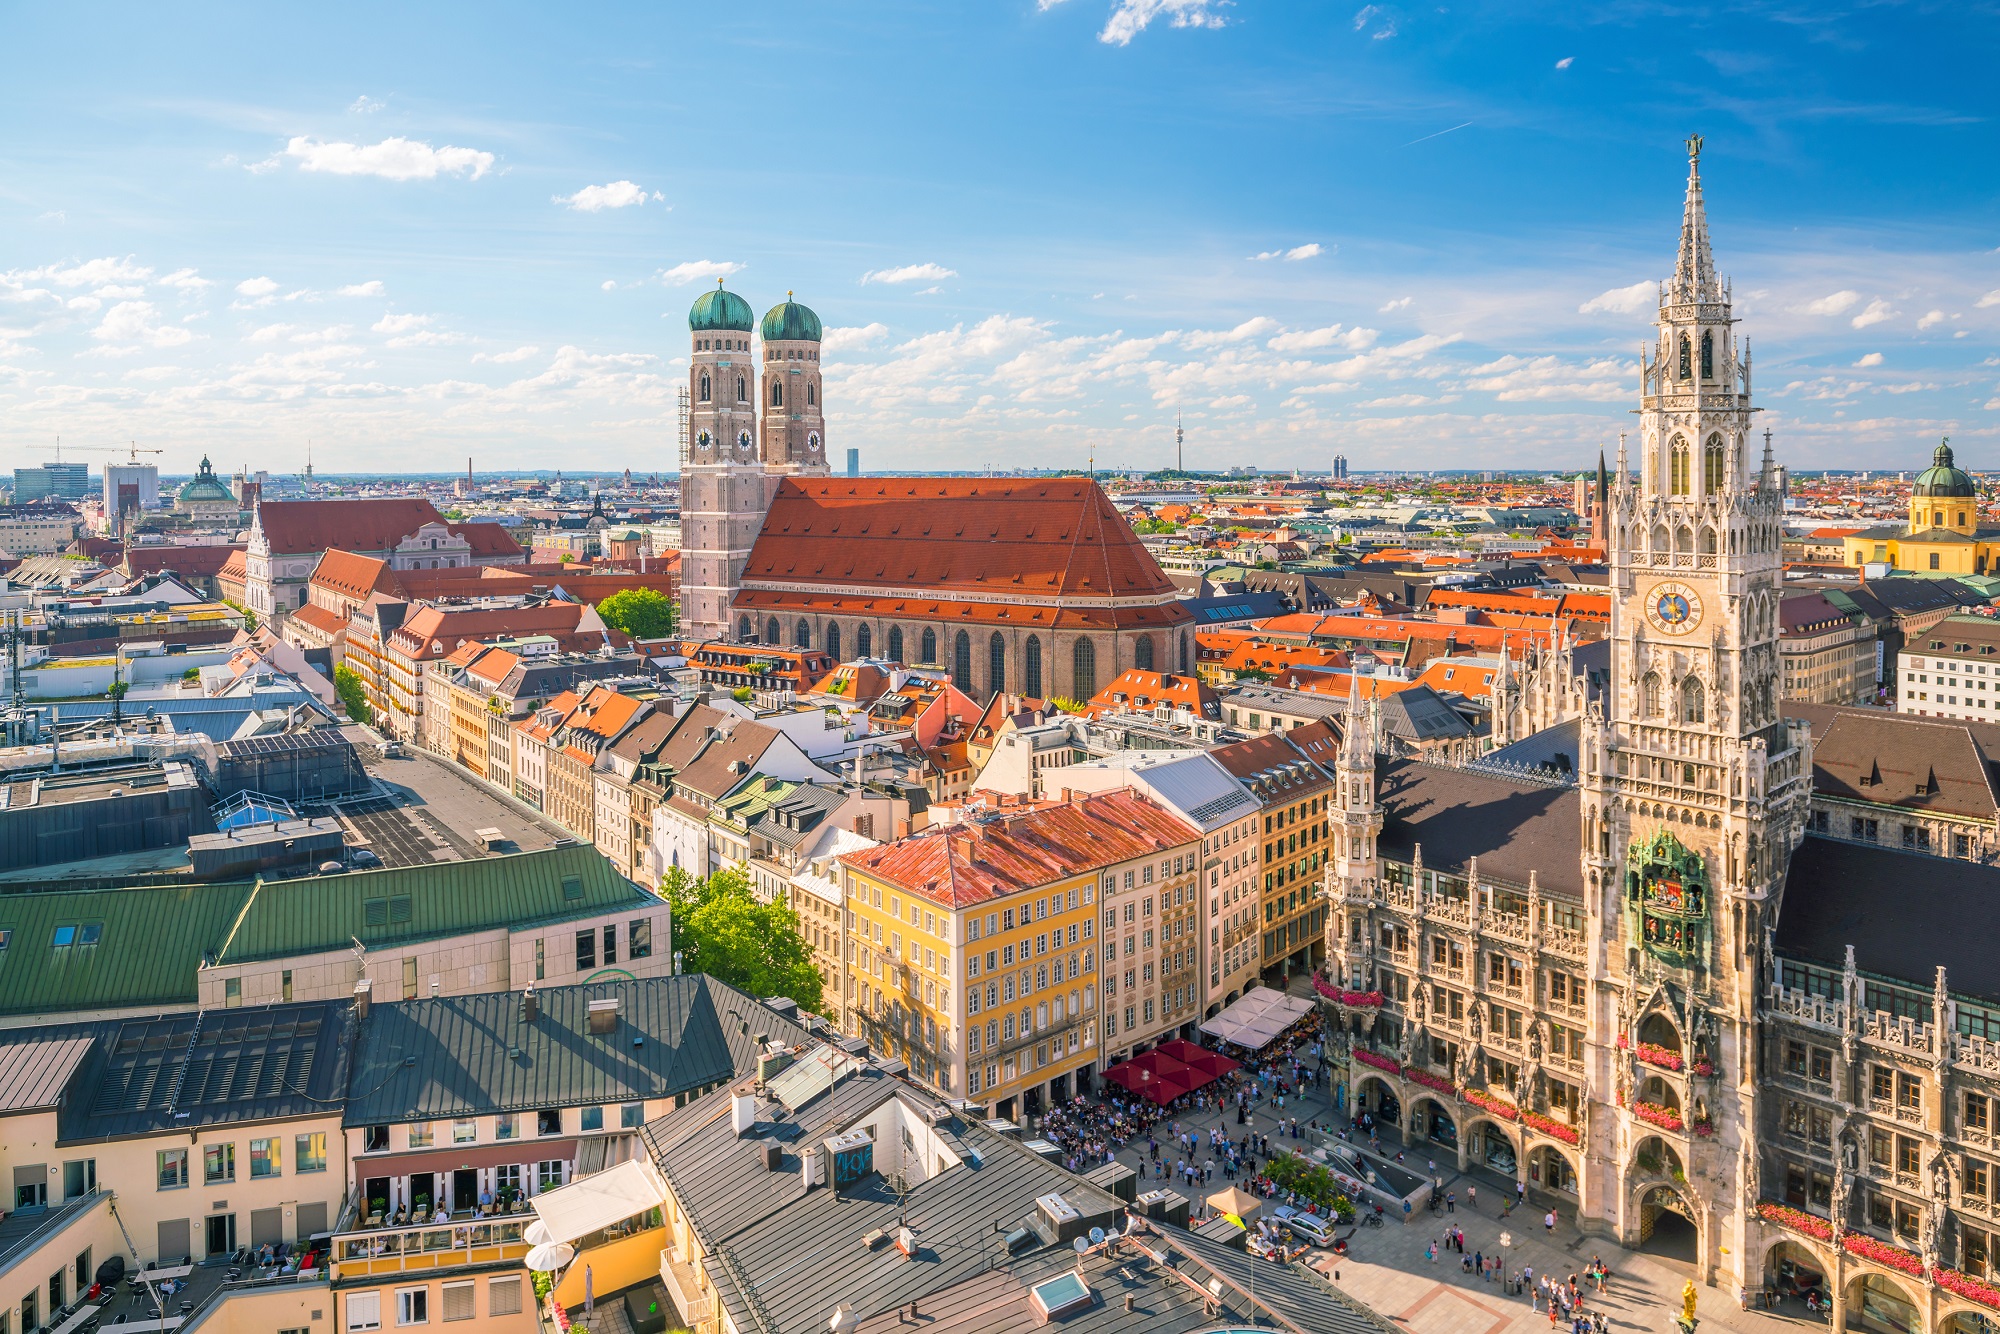 Μόναχο: Δέκα λόγοι για να επισκεφθείς την τρίτη μεγαλύτερη πόλη της Γερμανίας